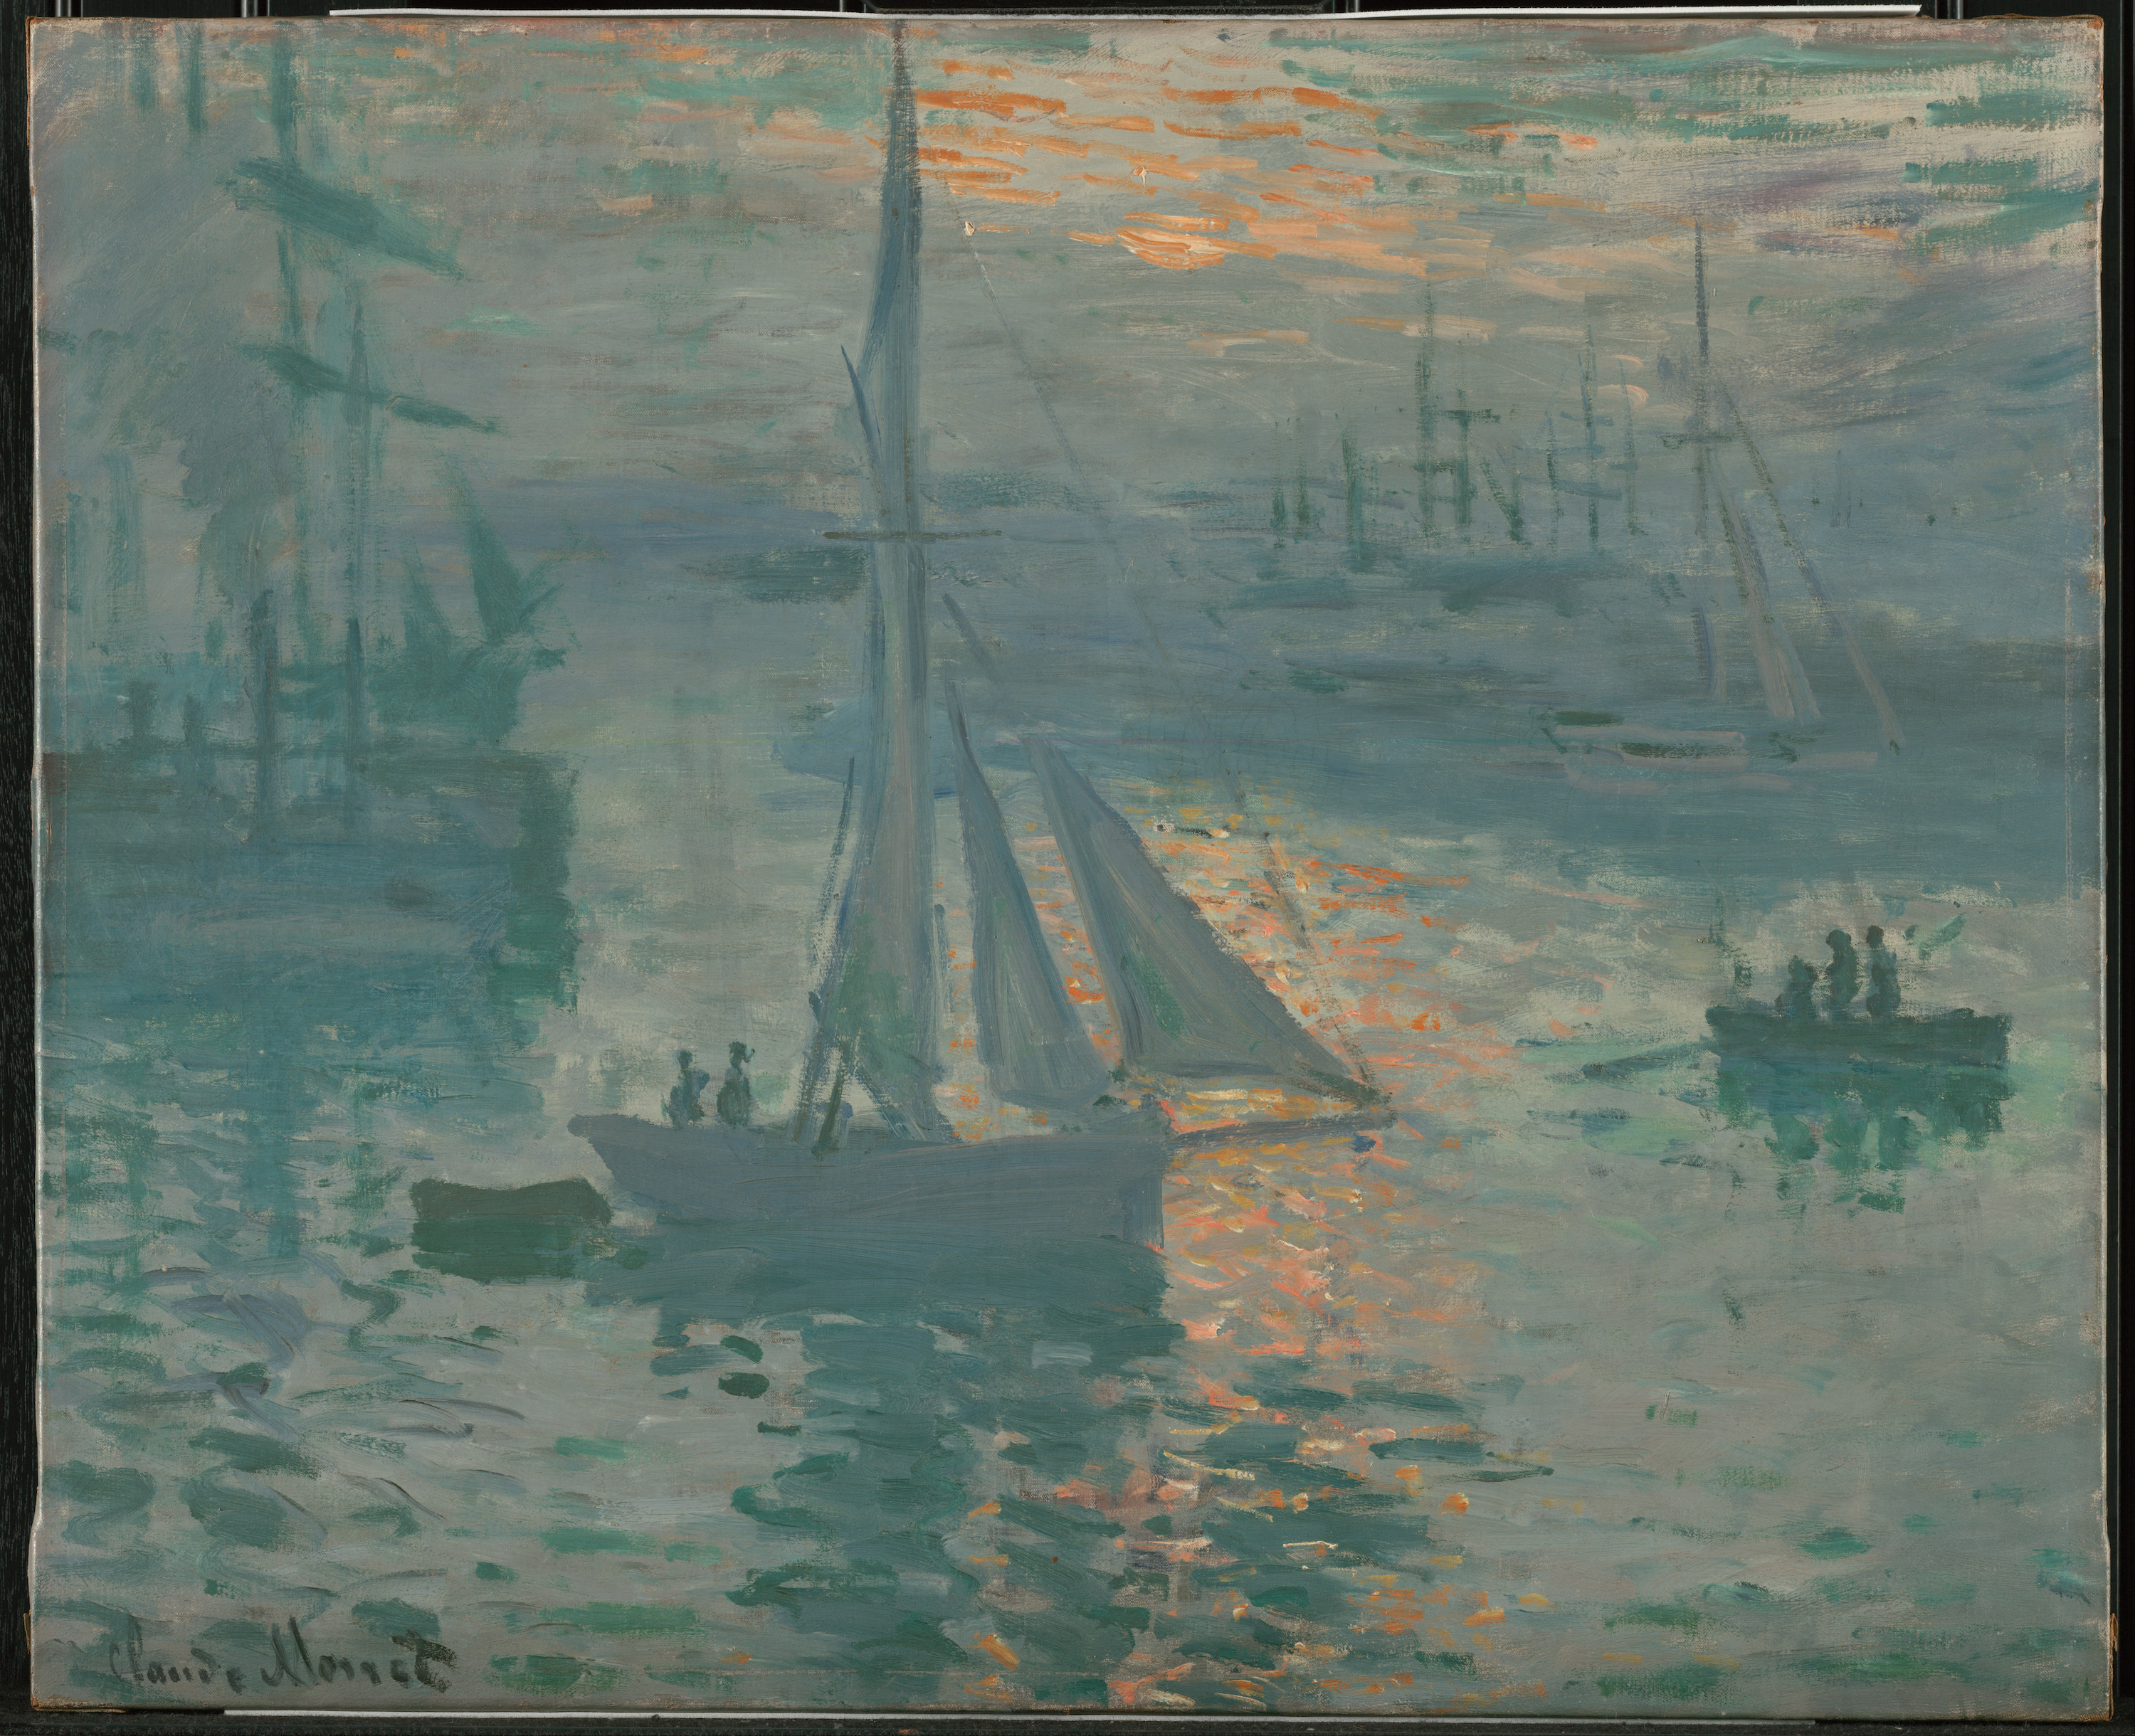 Sunrise (Marine) by Claude Monet - March or April 1873 - 61 x 50.2 cm J. Paul Getty Museum